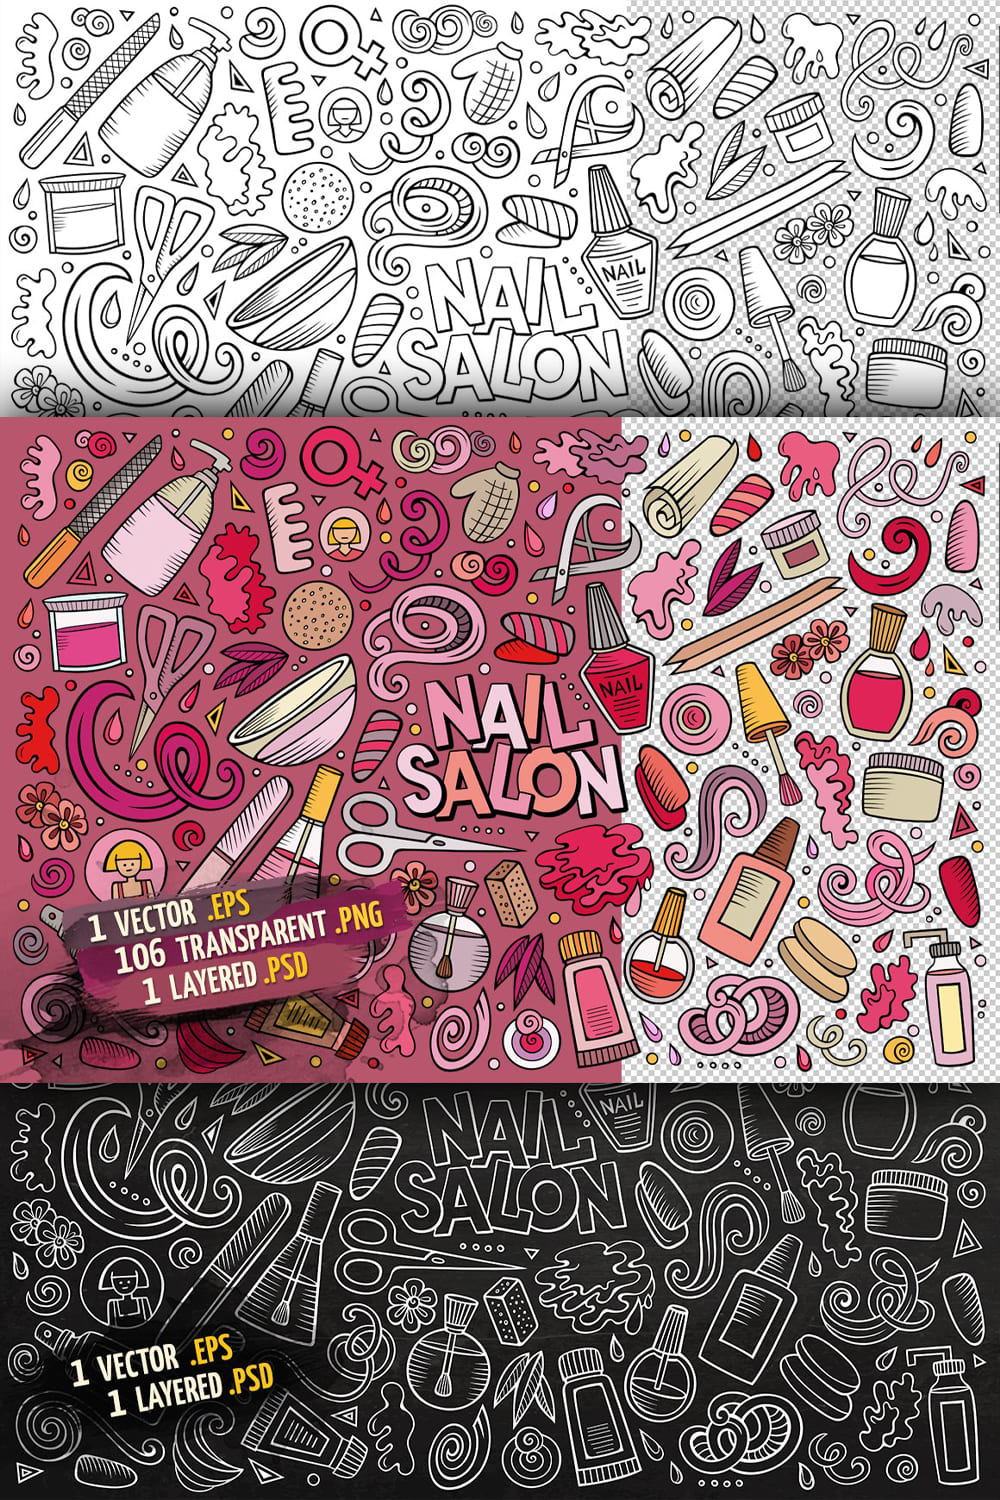 Nail Salon Objects Set Pinterest 1000 1500 1.